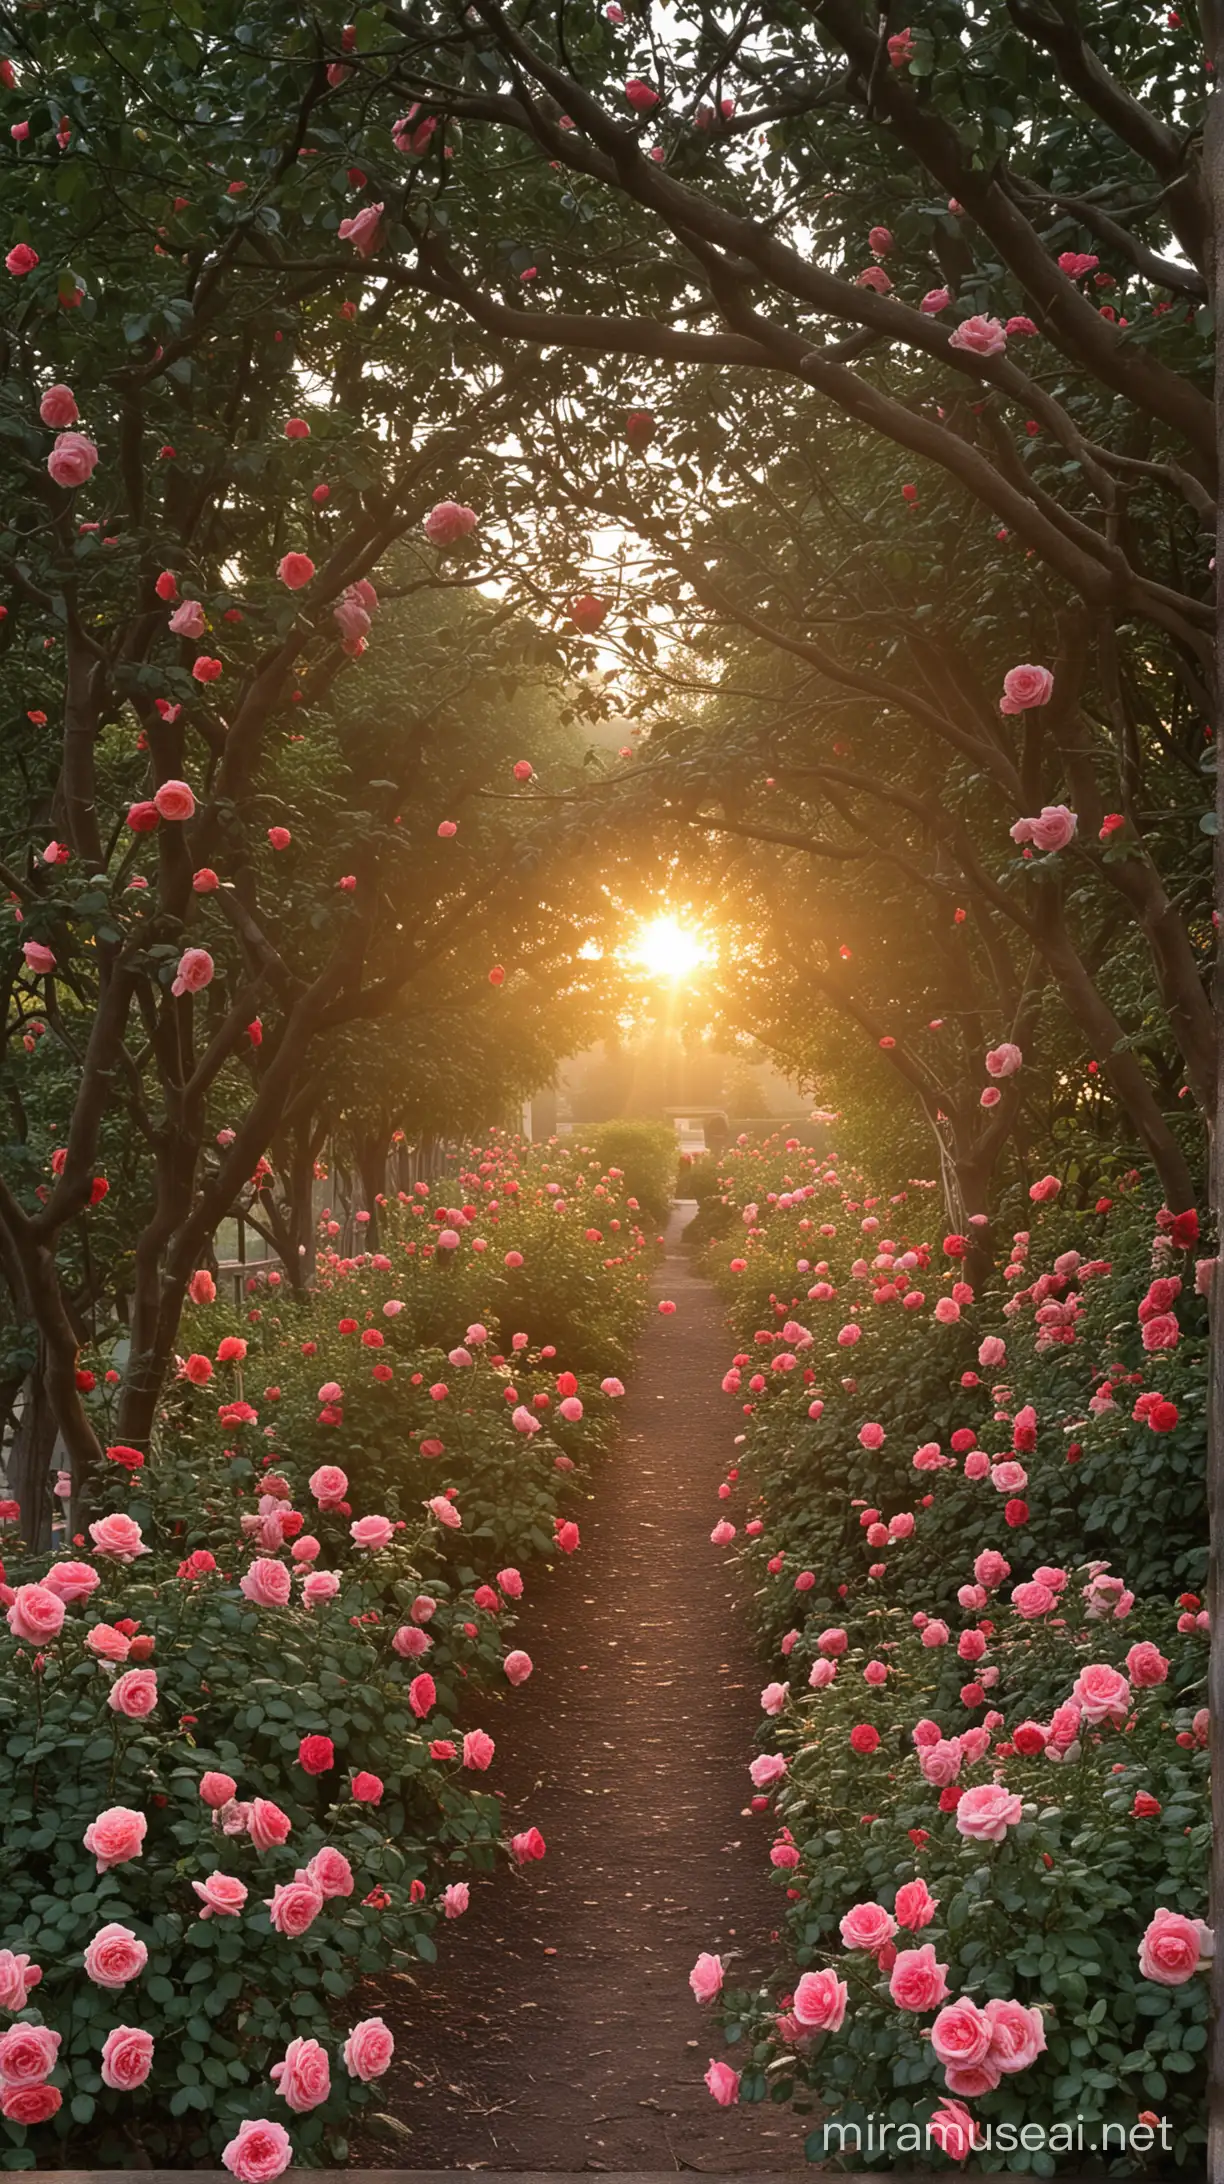 Vibrant Sunrise Over a Lush Rose Garden